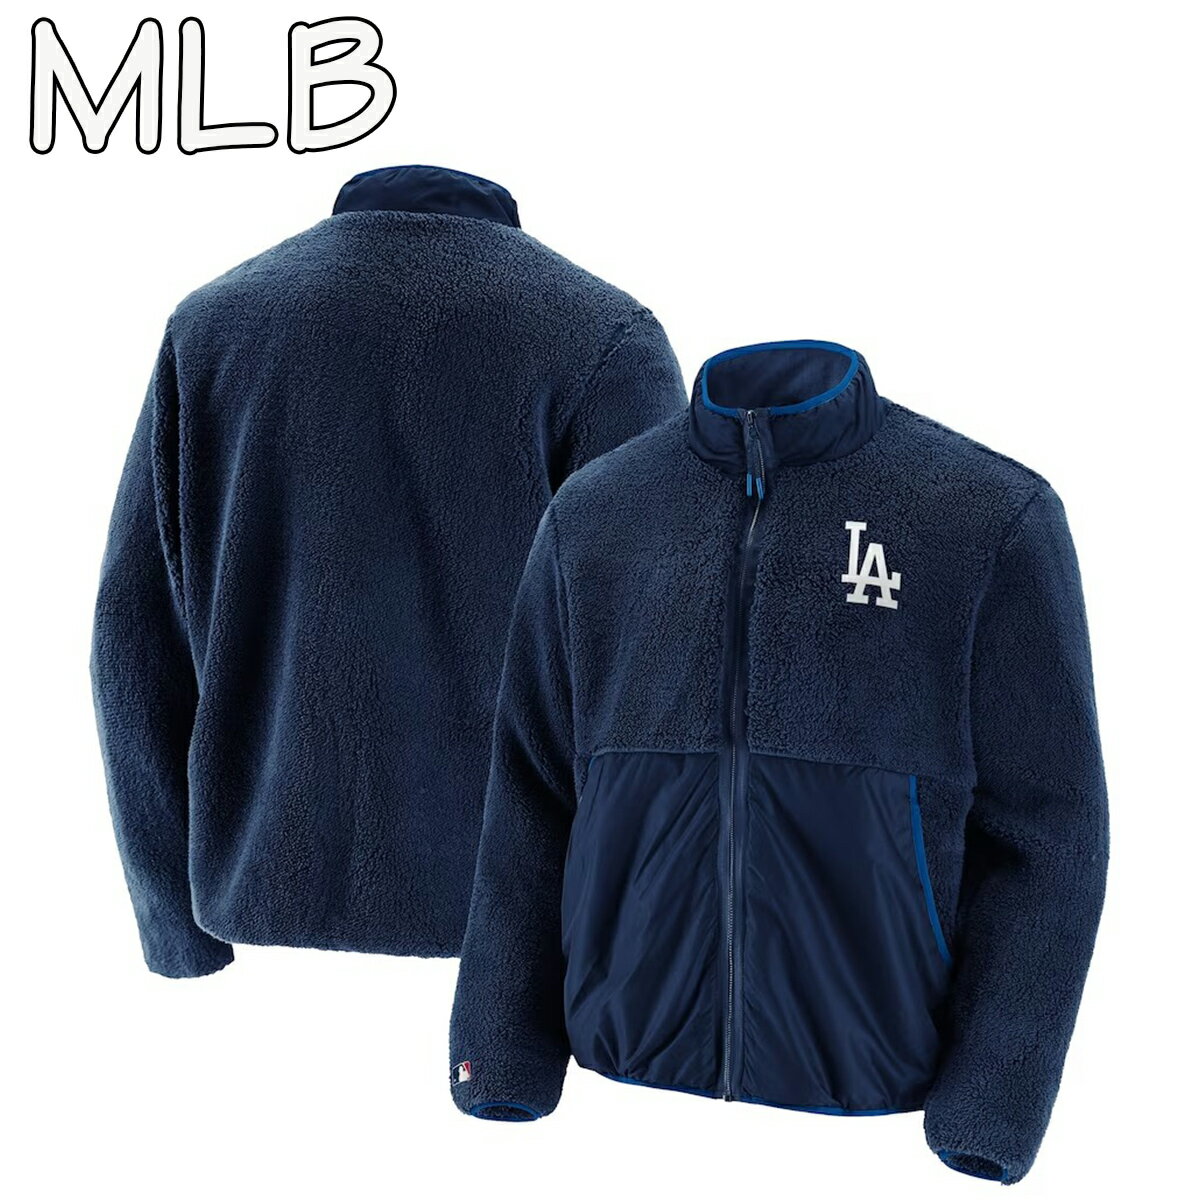 LA <strong>ドジャース</strong> スタジャン MLB オフィシャル ファナティクス ブランド フリース ジャケット NIKE ナイキ USサイズ 海外限定 正規品[衣類]ユ00572